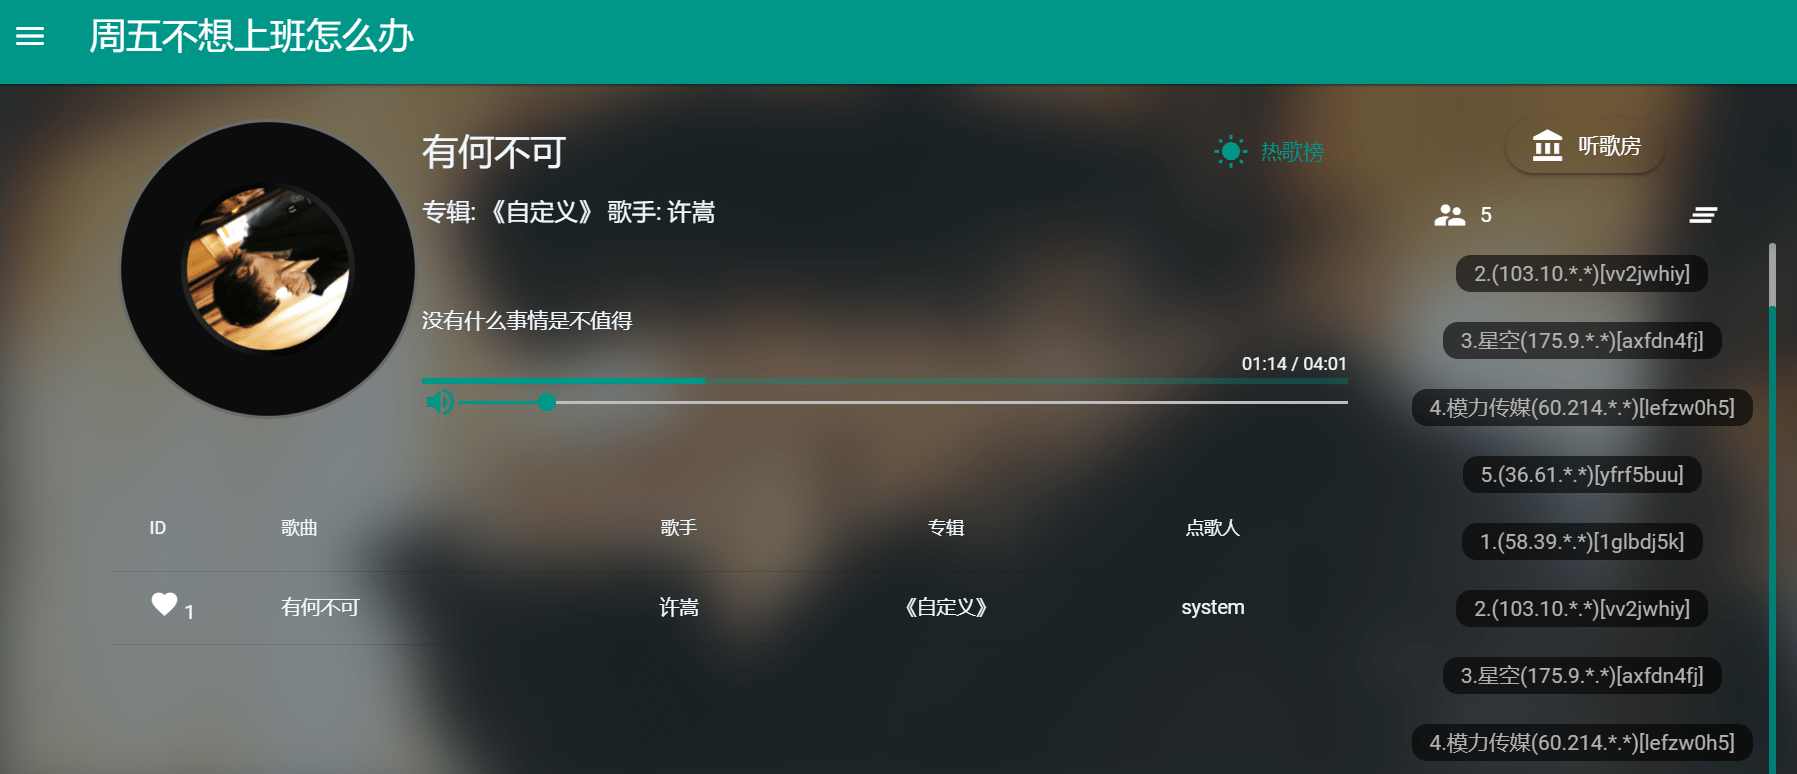 米乐m69个无损音乐下载平台全网音乐免费听随便下(图12)